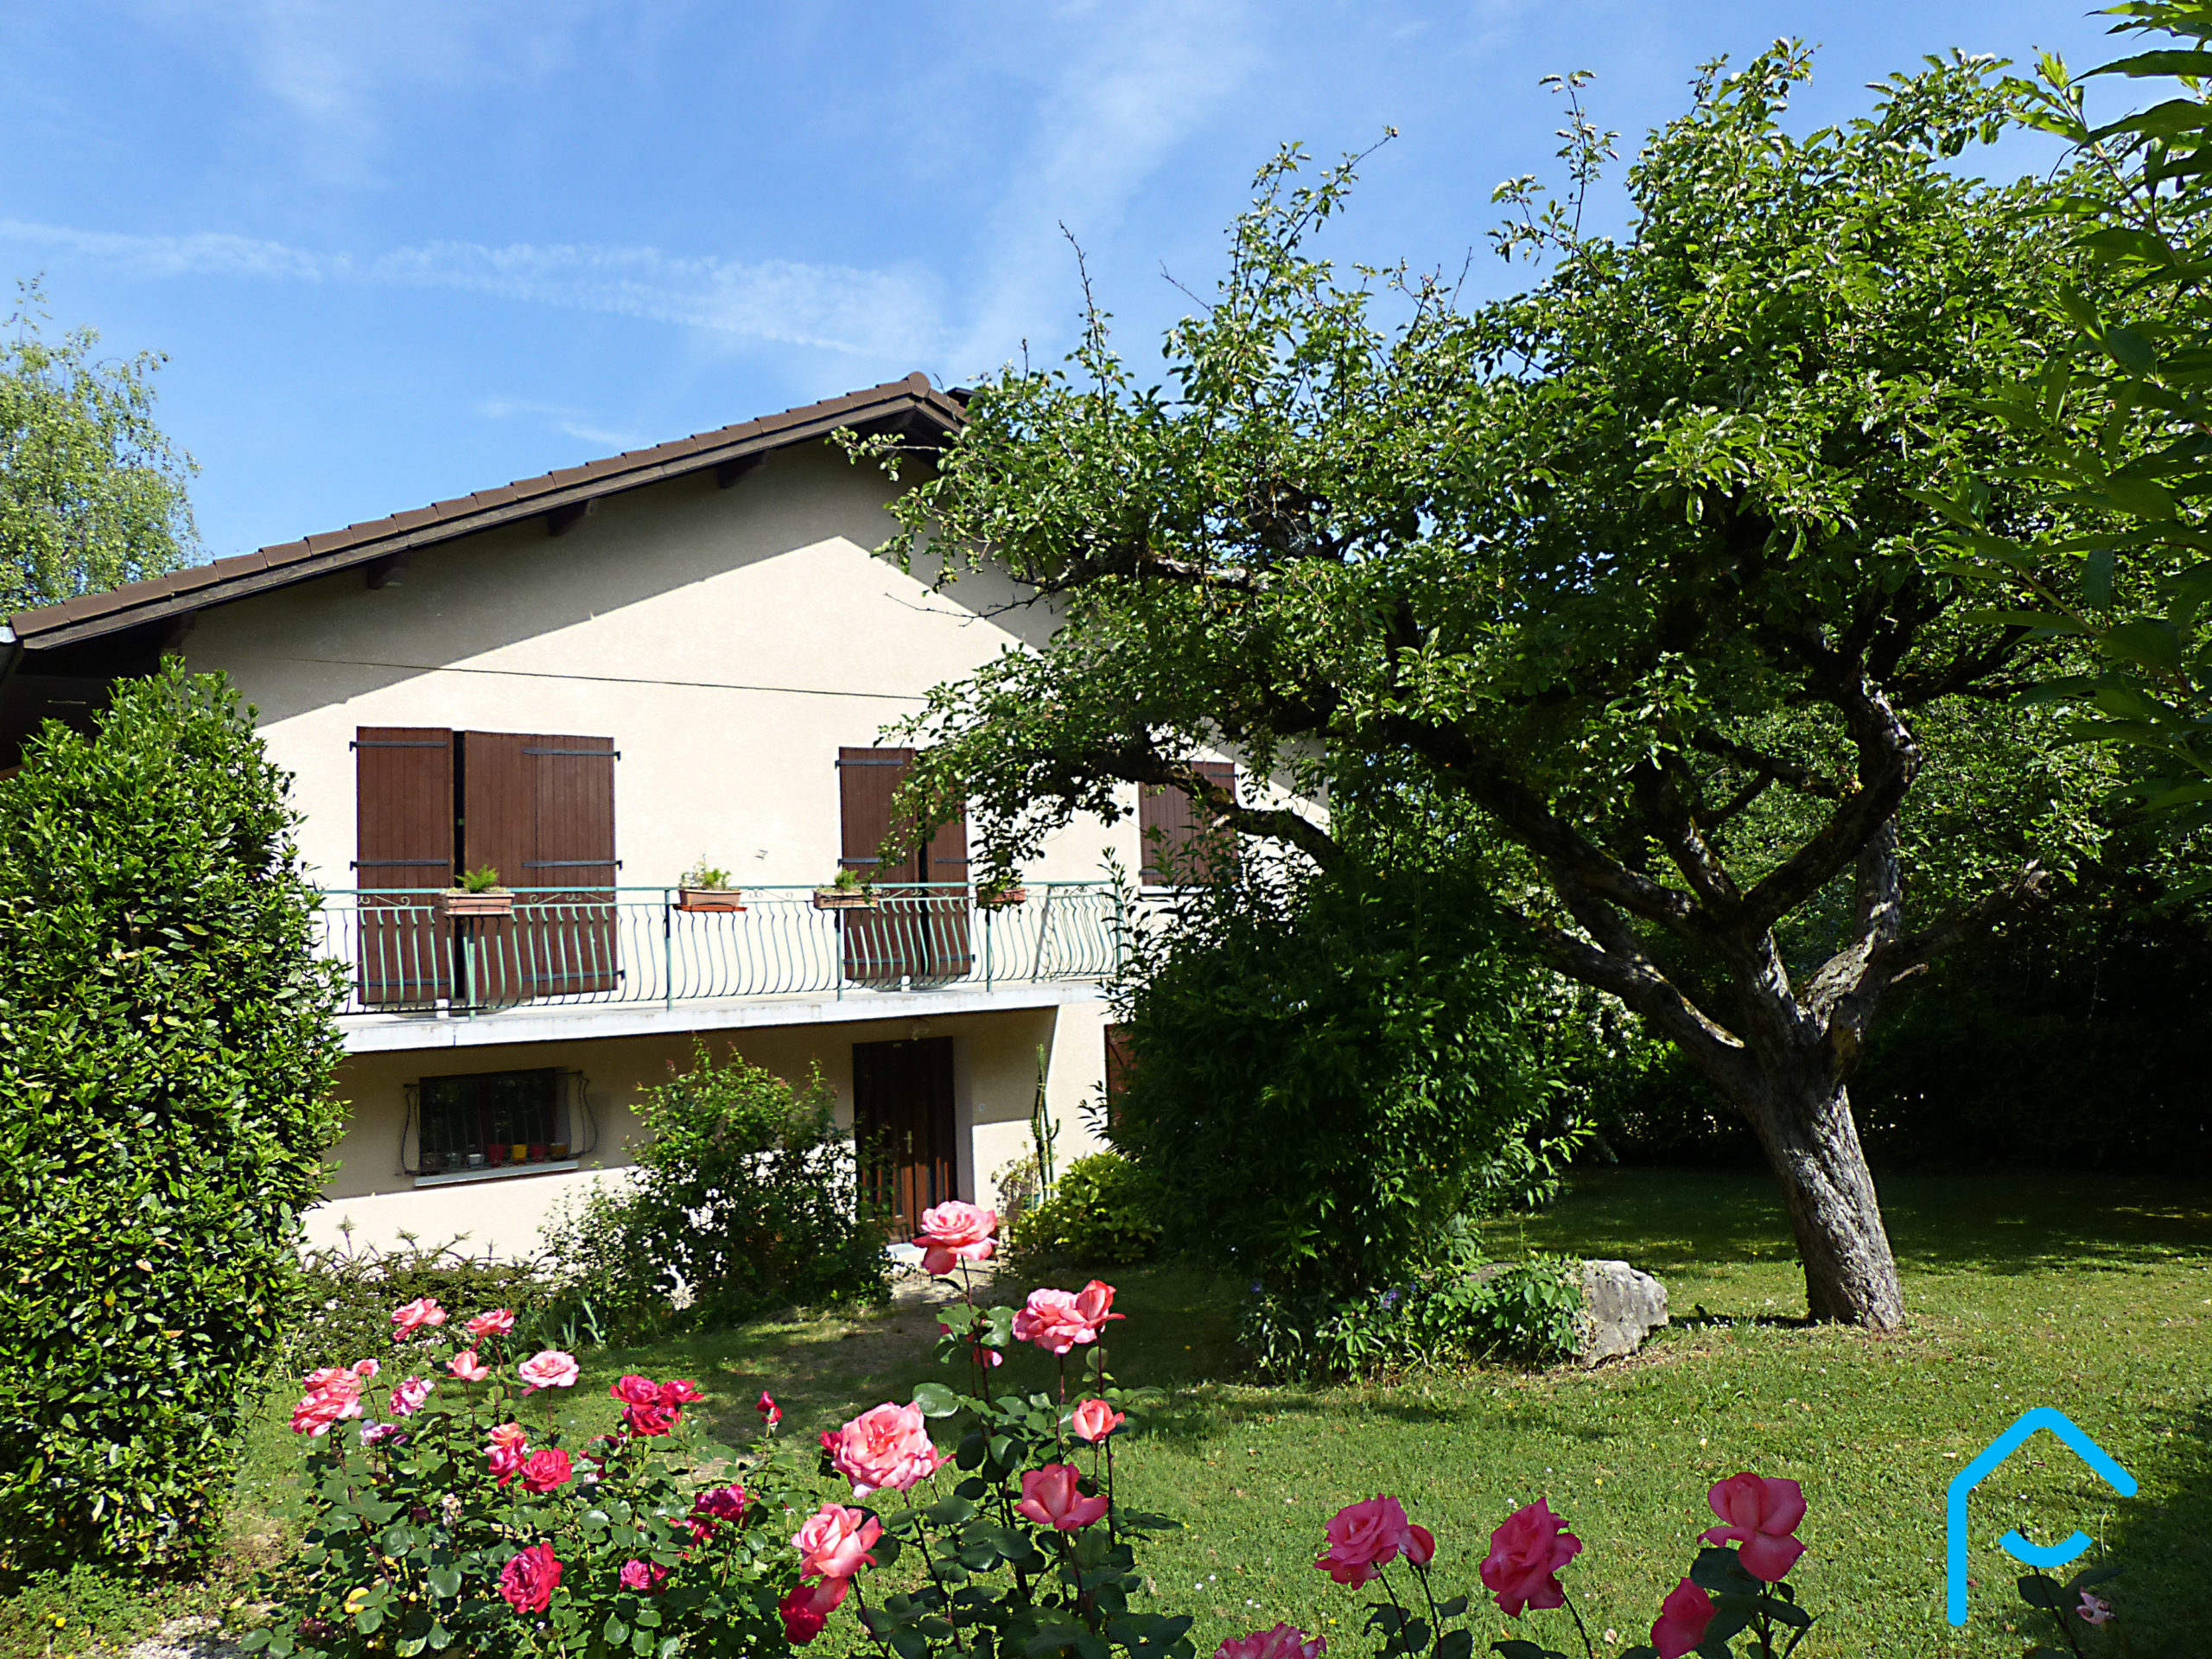 A vendre maison individuelle Jacob Bellecombette Savoie Chambéry terrain piscine jardin vue 10